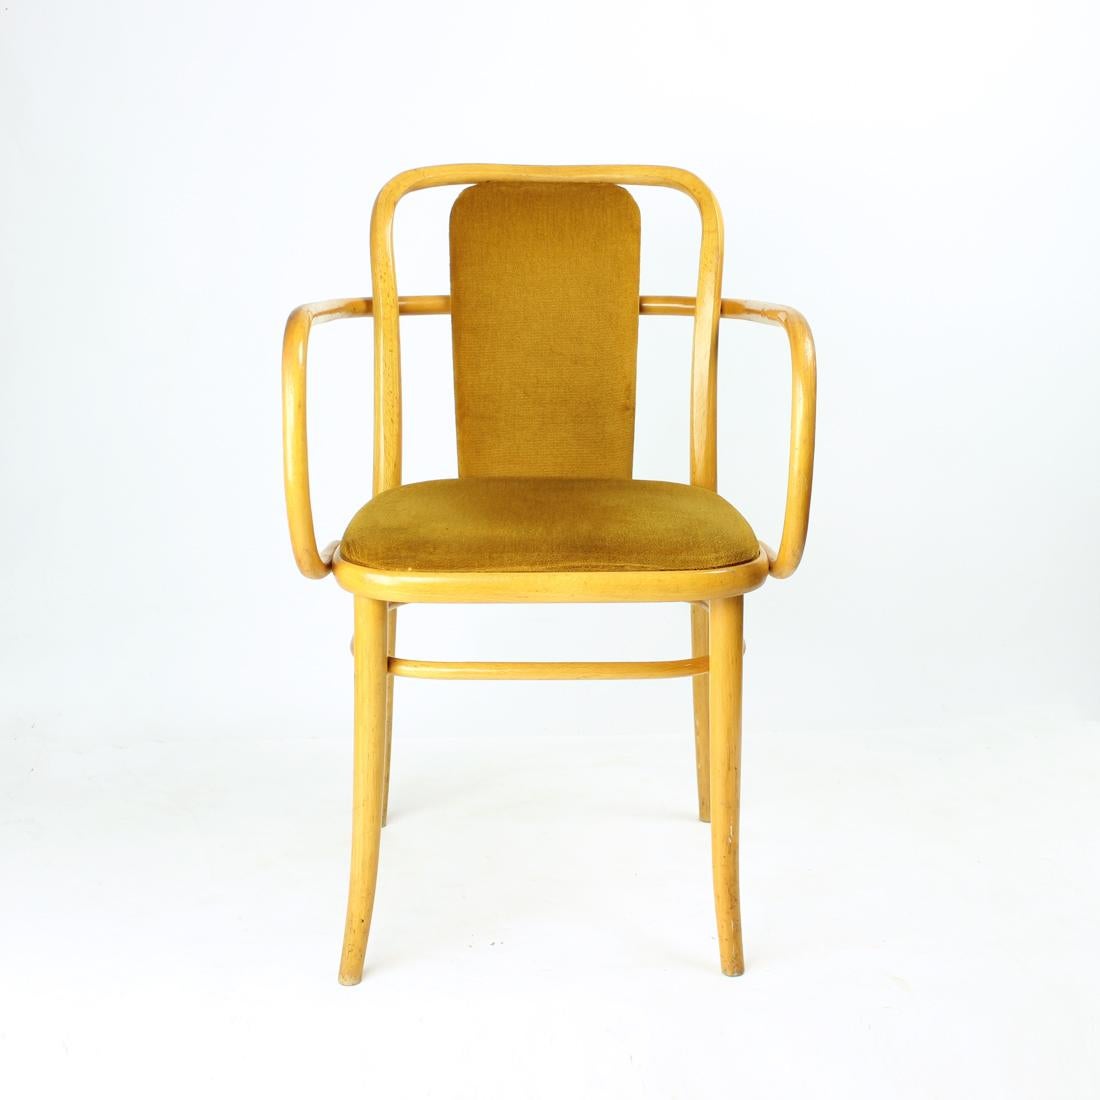 Fauteuil iconique et élégant produit par TON en République tchèque dans les années 1930. Cette chaise est une variante du modèle classique 